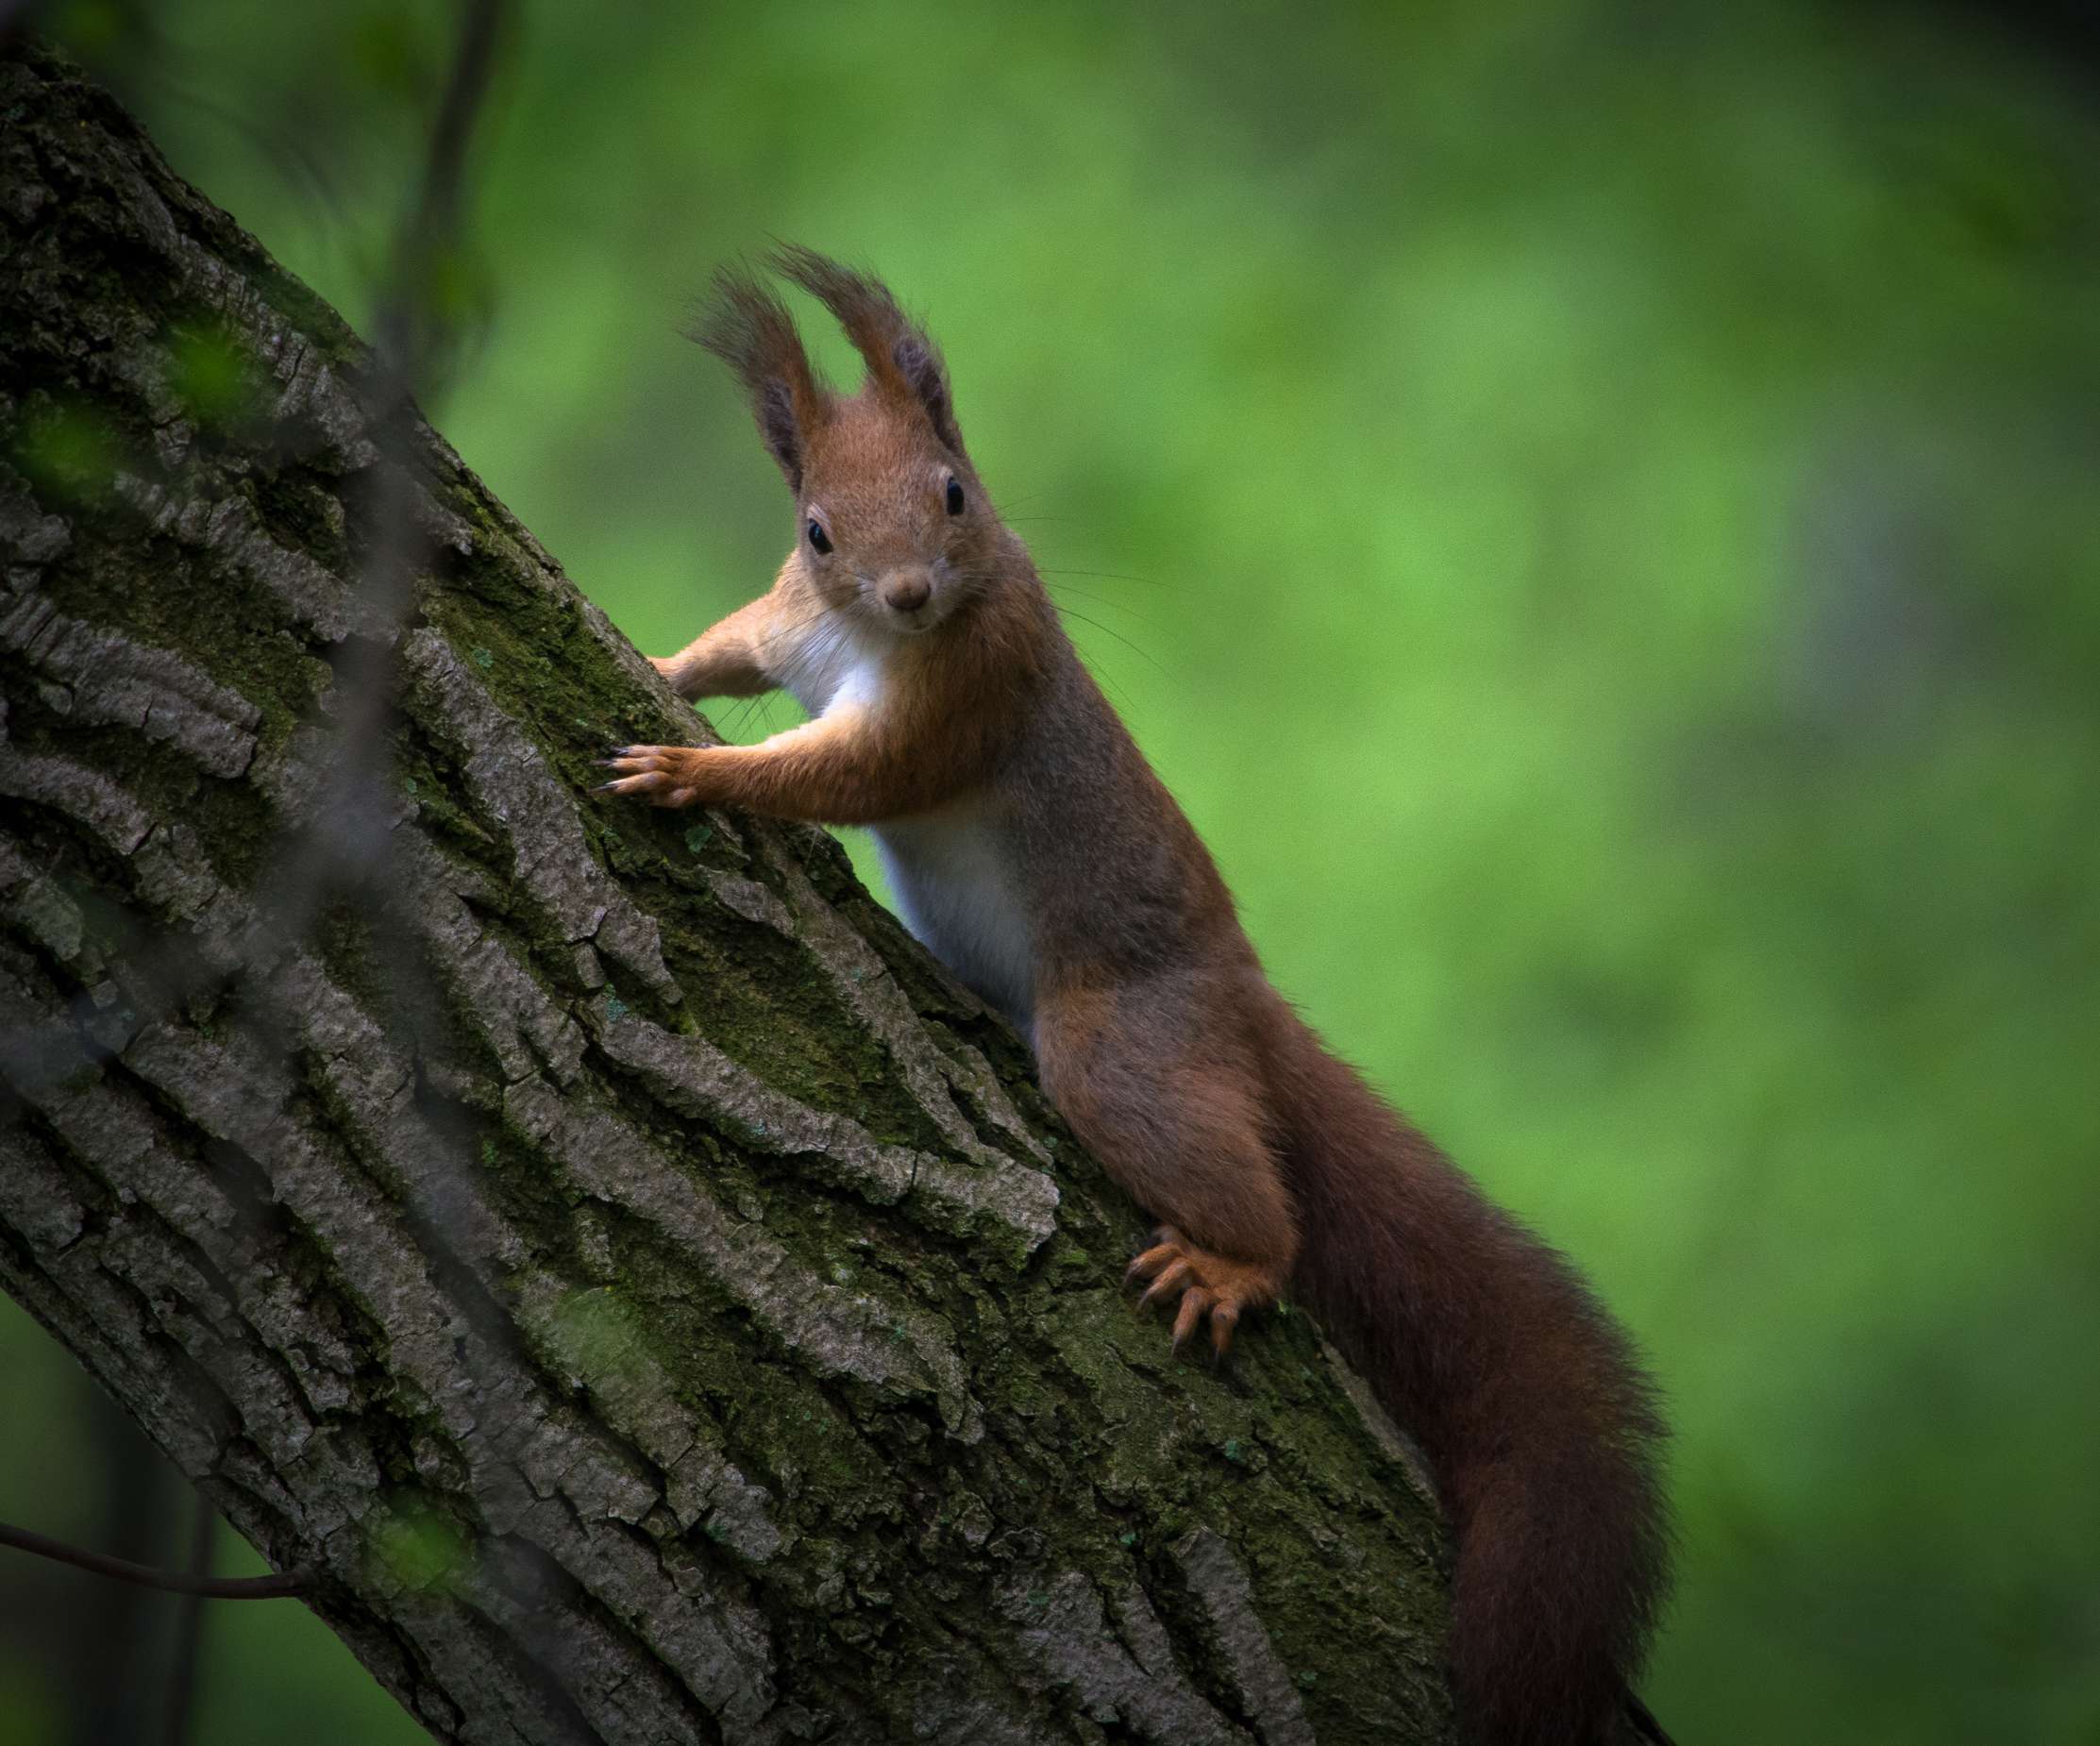 Vörös mókus (Fotópályázat 2016)